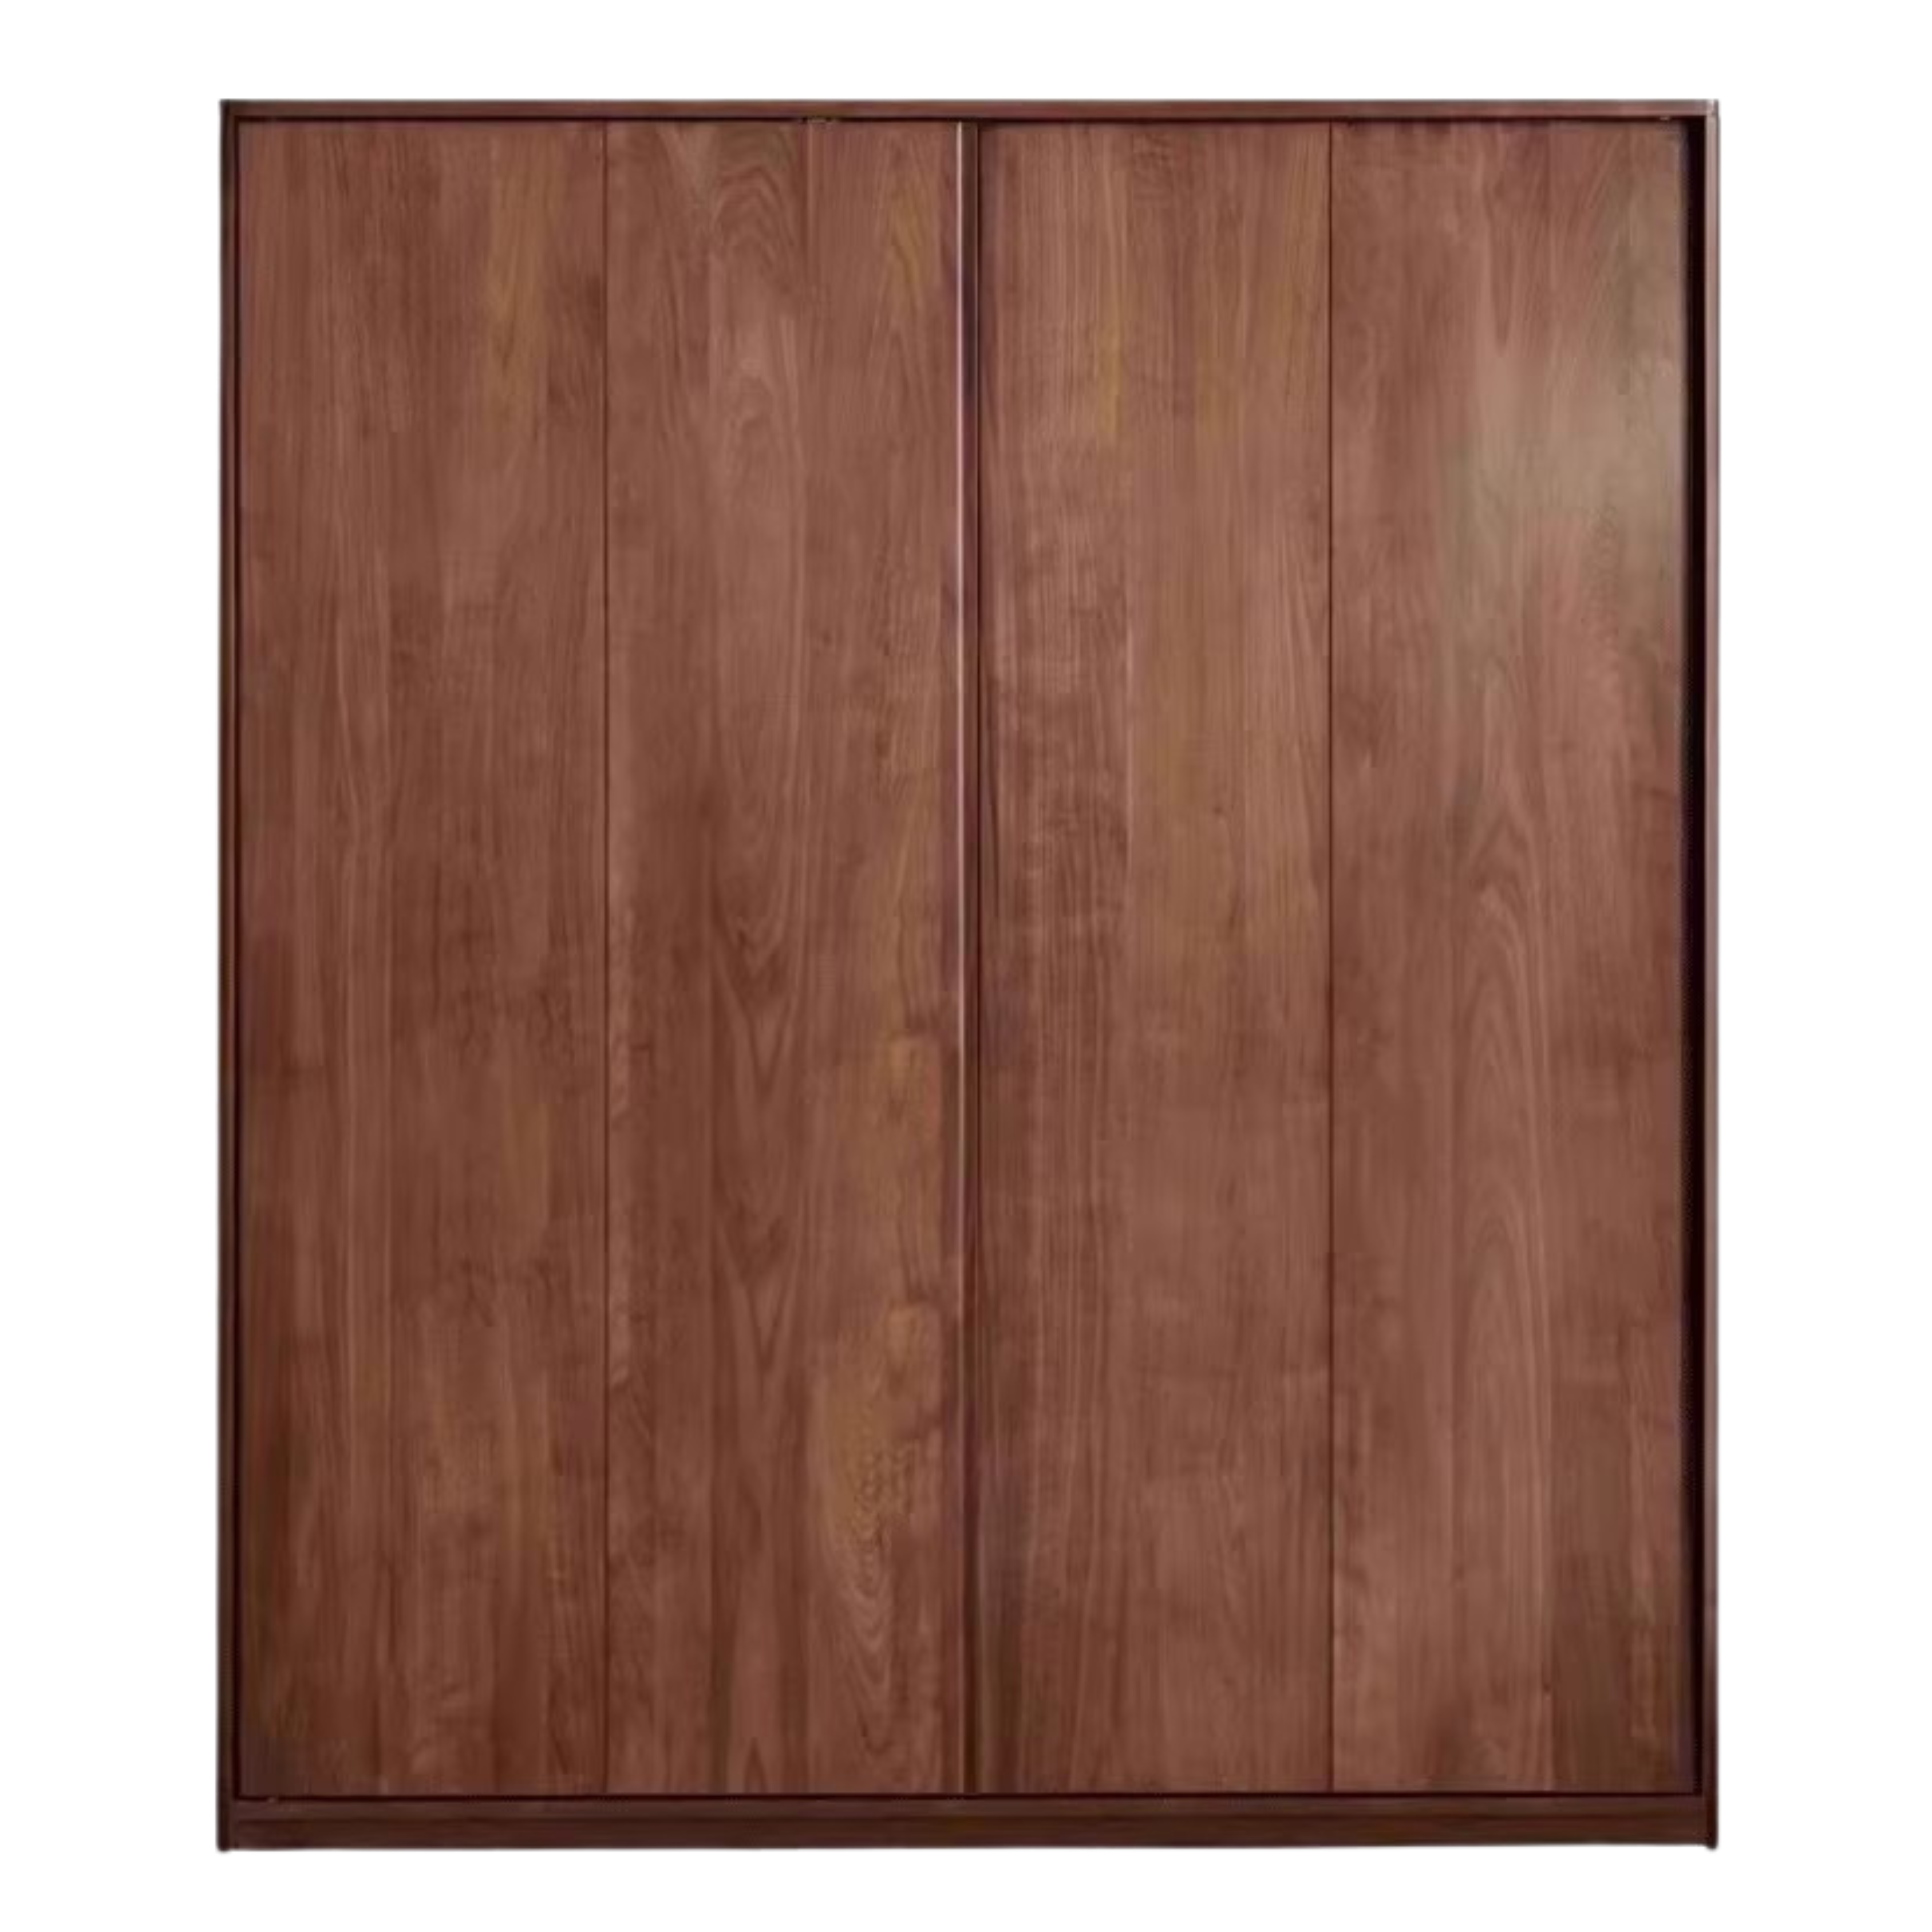 Black Walnut solid wood sliding door wardrobe